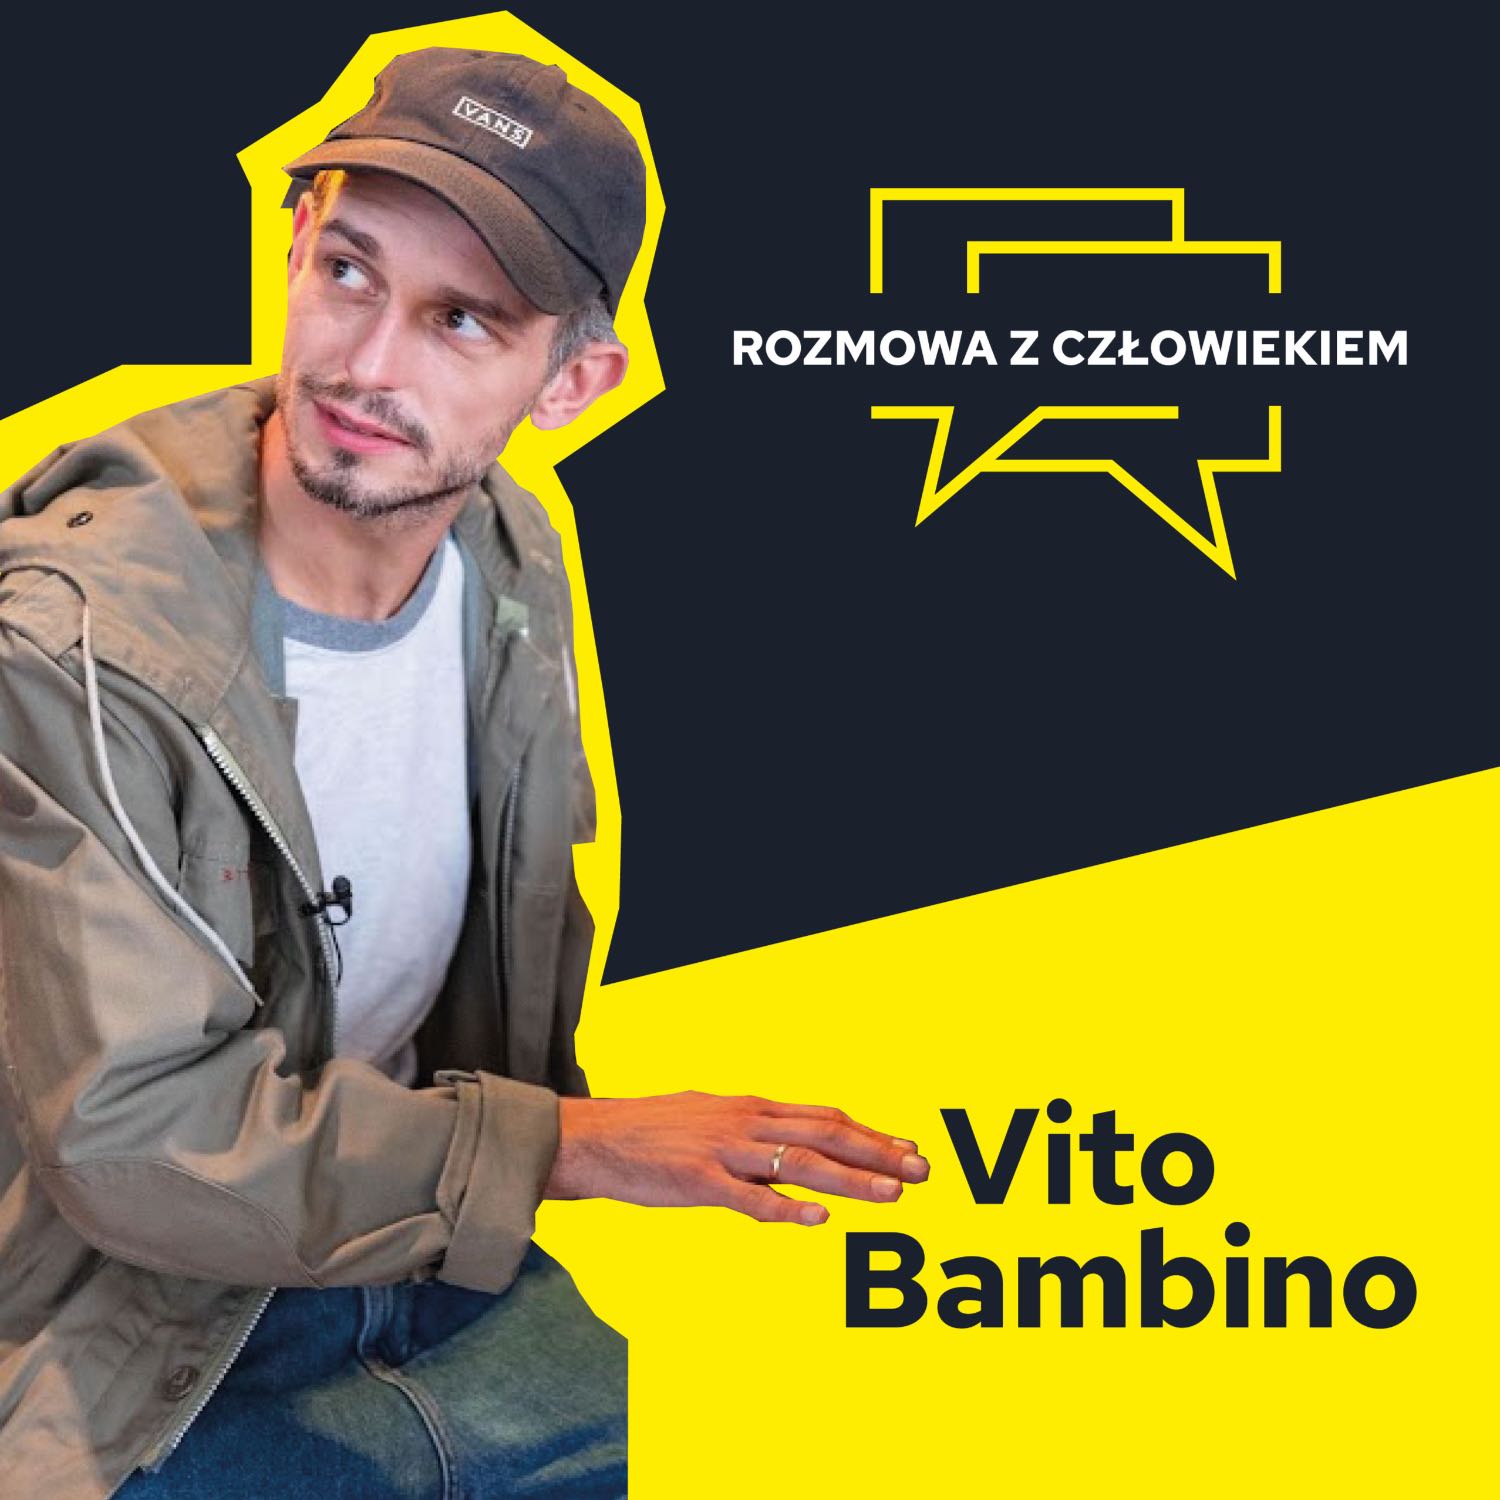 rozmowa z Człowiekiem - Vito Bambino